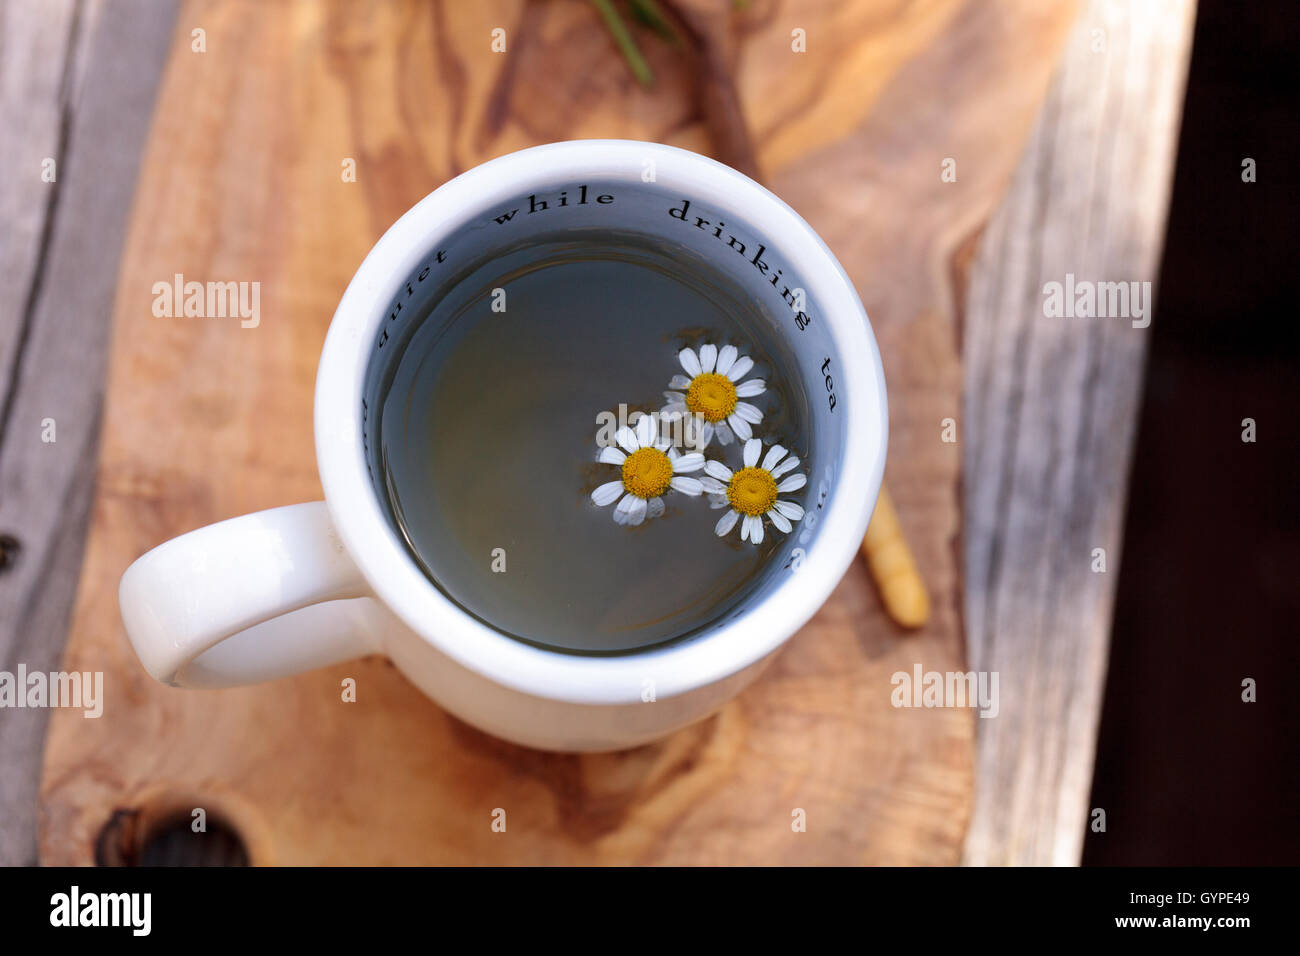 Un té de manzanilla con daisy flores de manzanilla en una taza blanca caliente sobre una placa de corte rústico de madera y una cuchara. Este remedio casero es Foto de stock